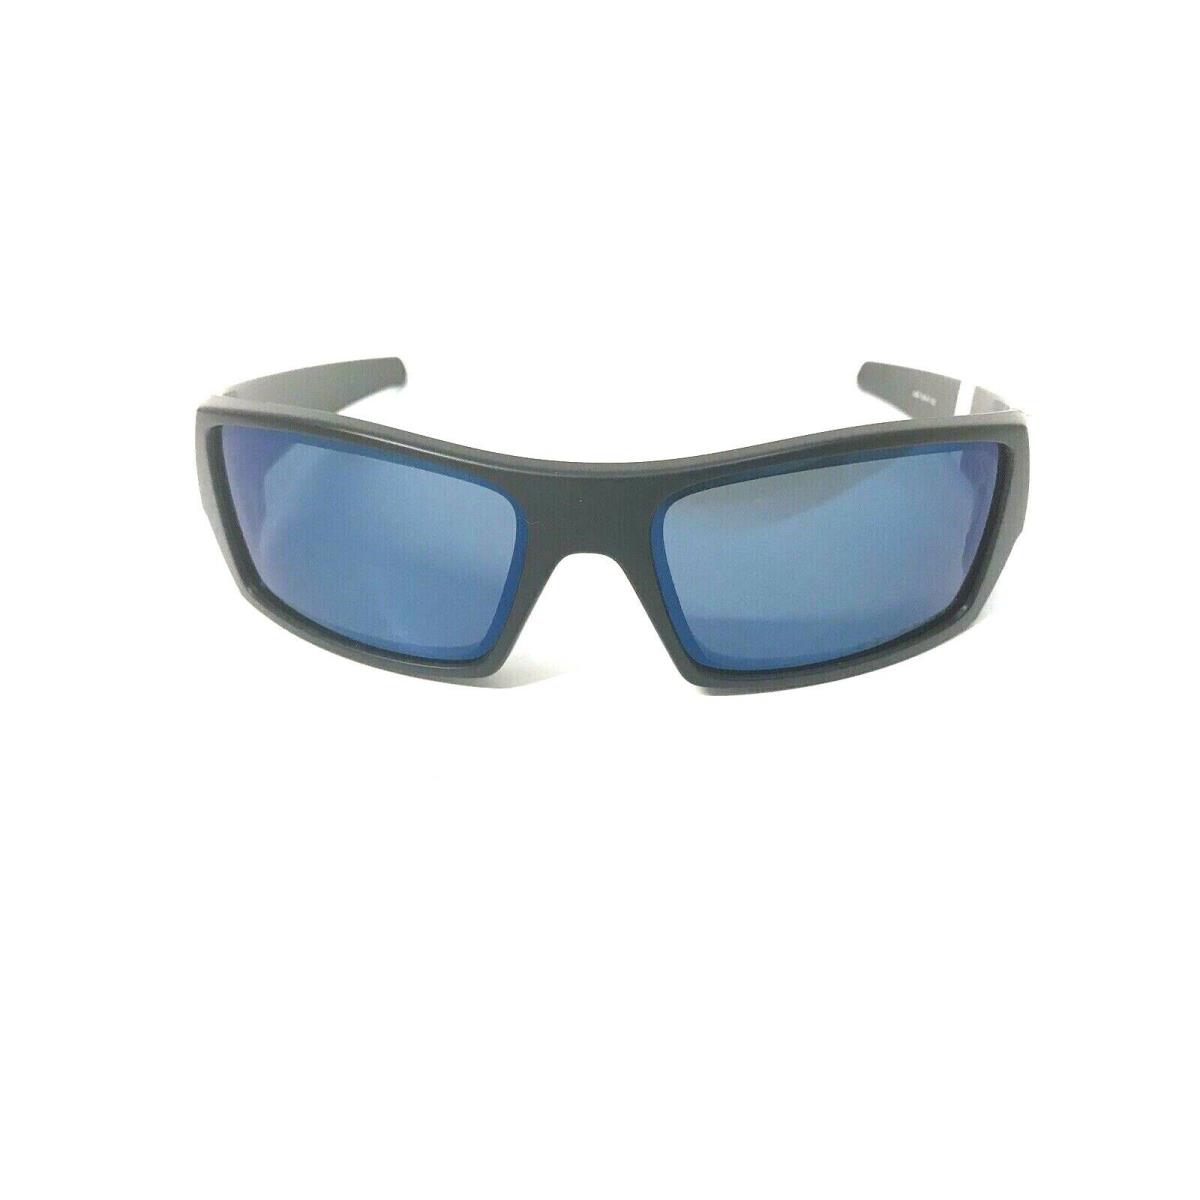 Oakley sunglasses Gascan - Black Frame, Gray Lens 8